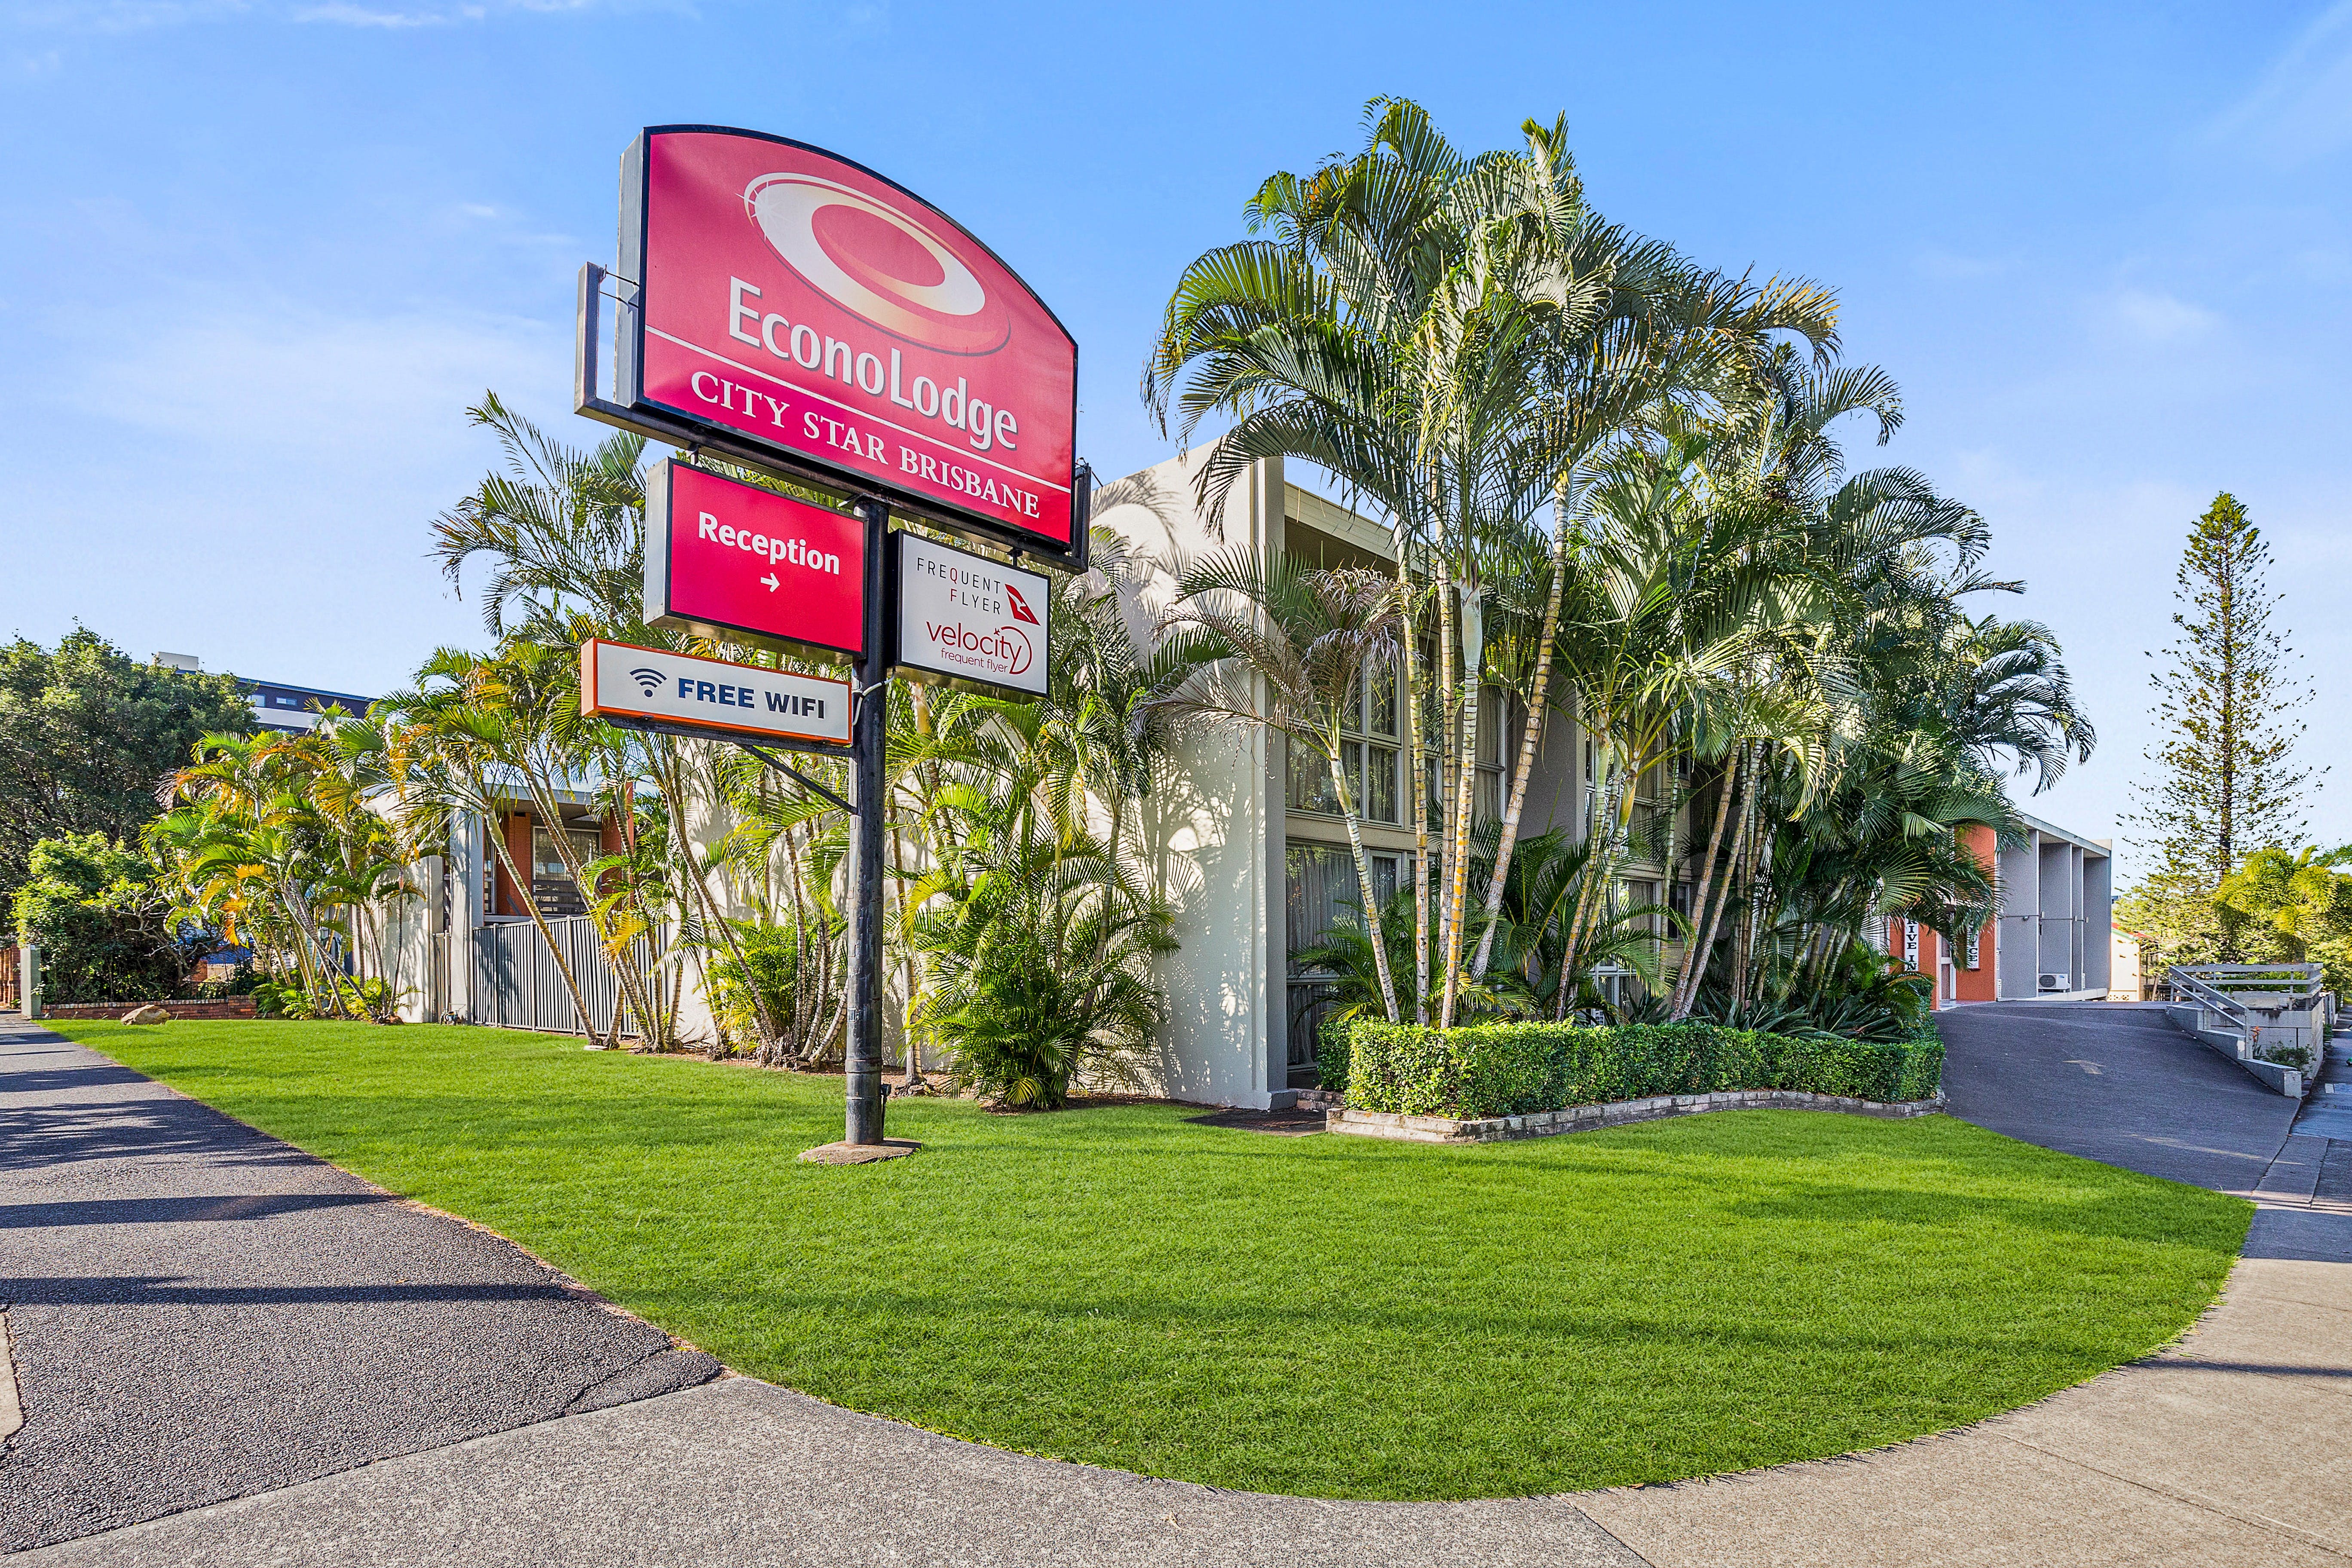 Econo Lodge City Star Brisbane - Accommodation Sunshine Coast